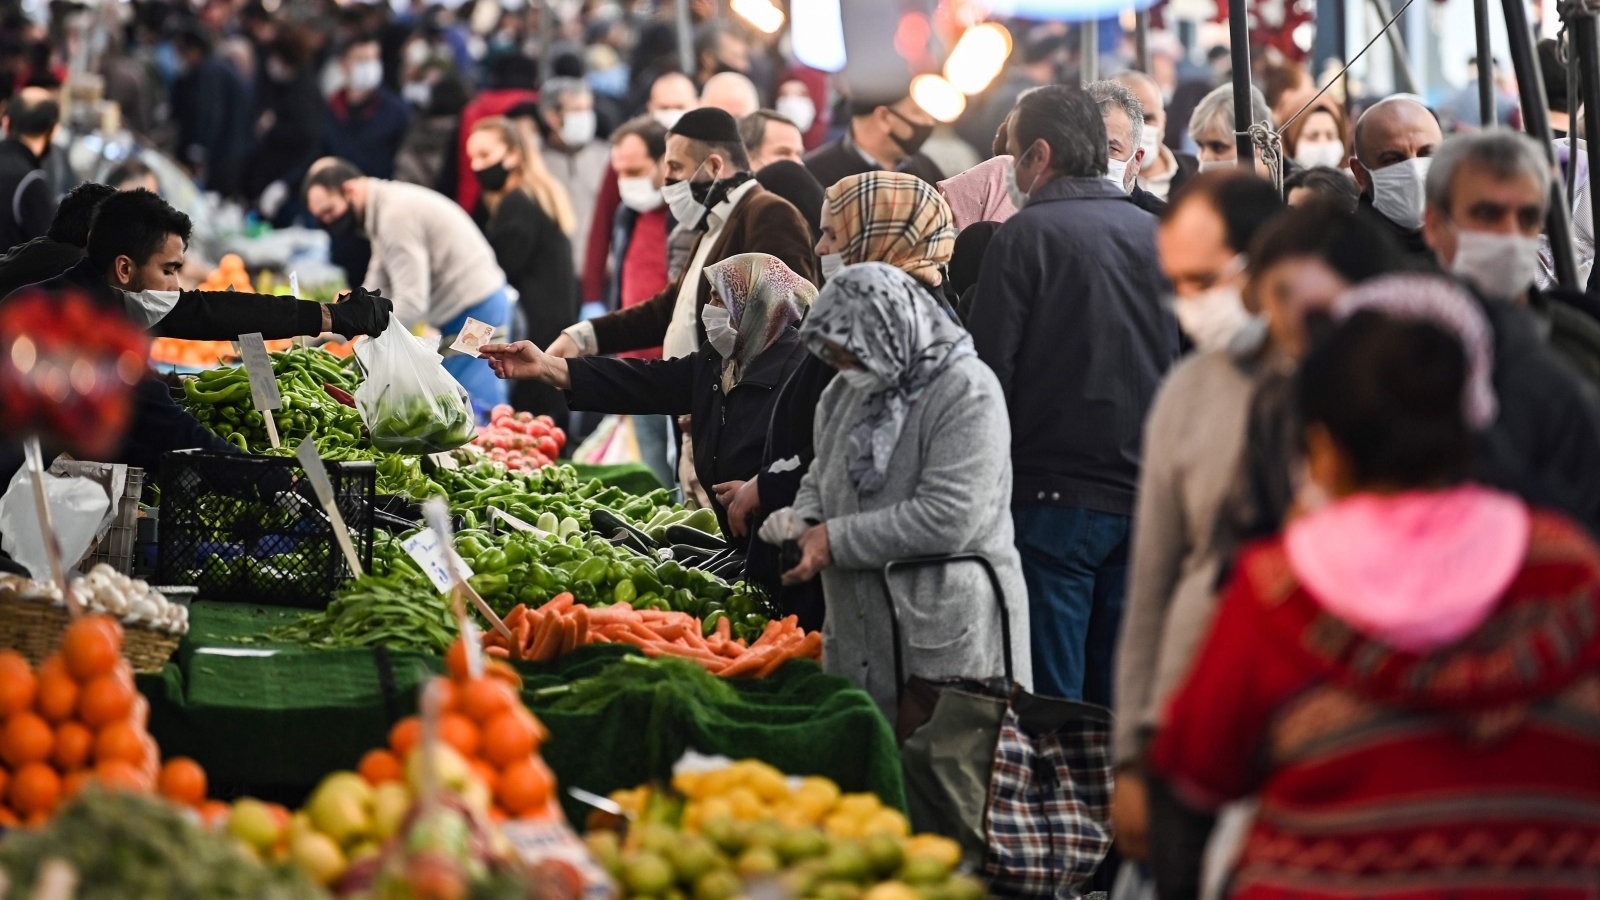 أشخاص يقومون بالتسوق من البقالة في سوق محلي في اسطنبول، تركيا. 17 أبريل 2020